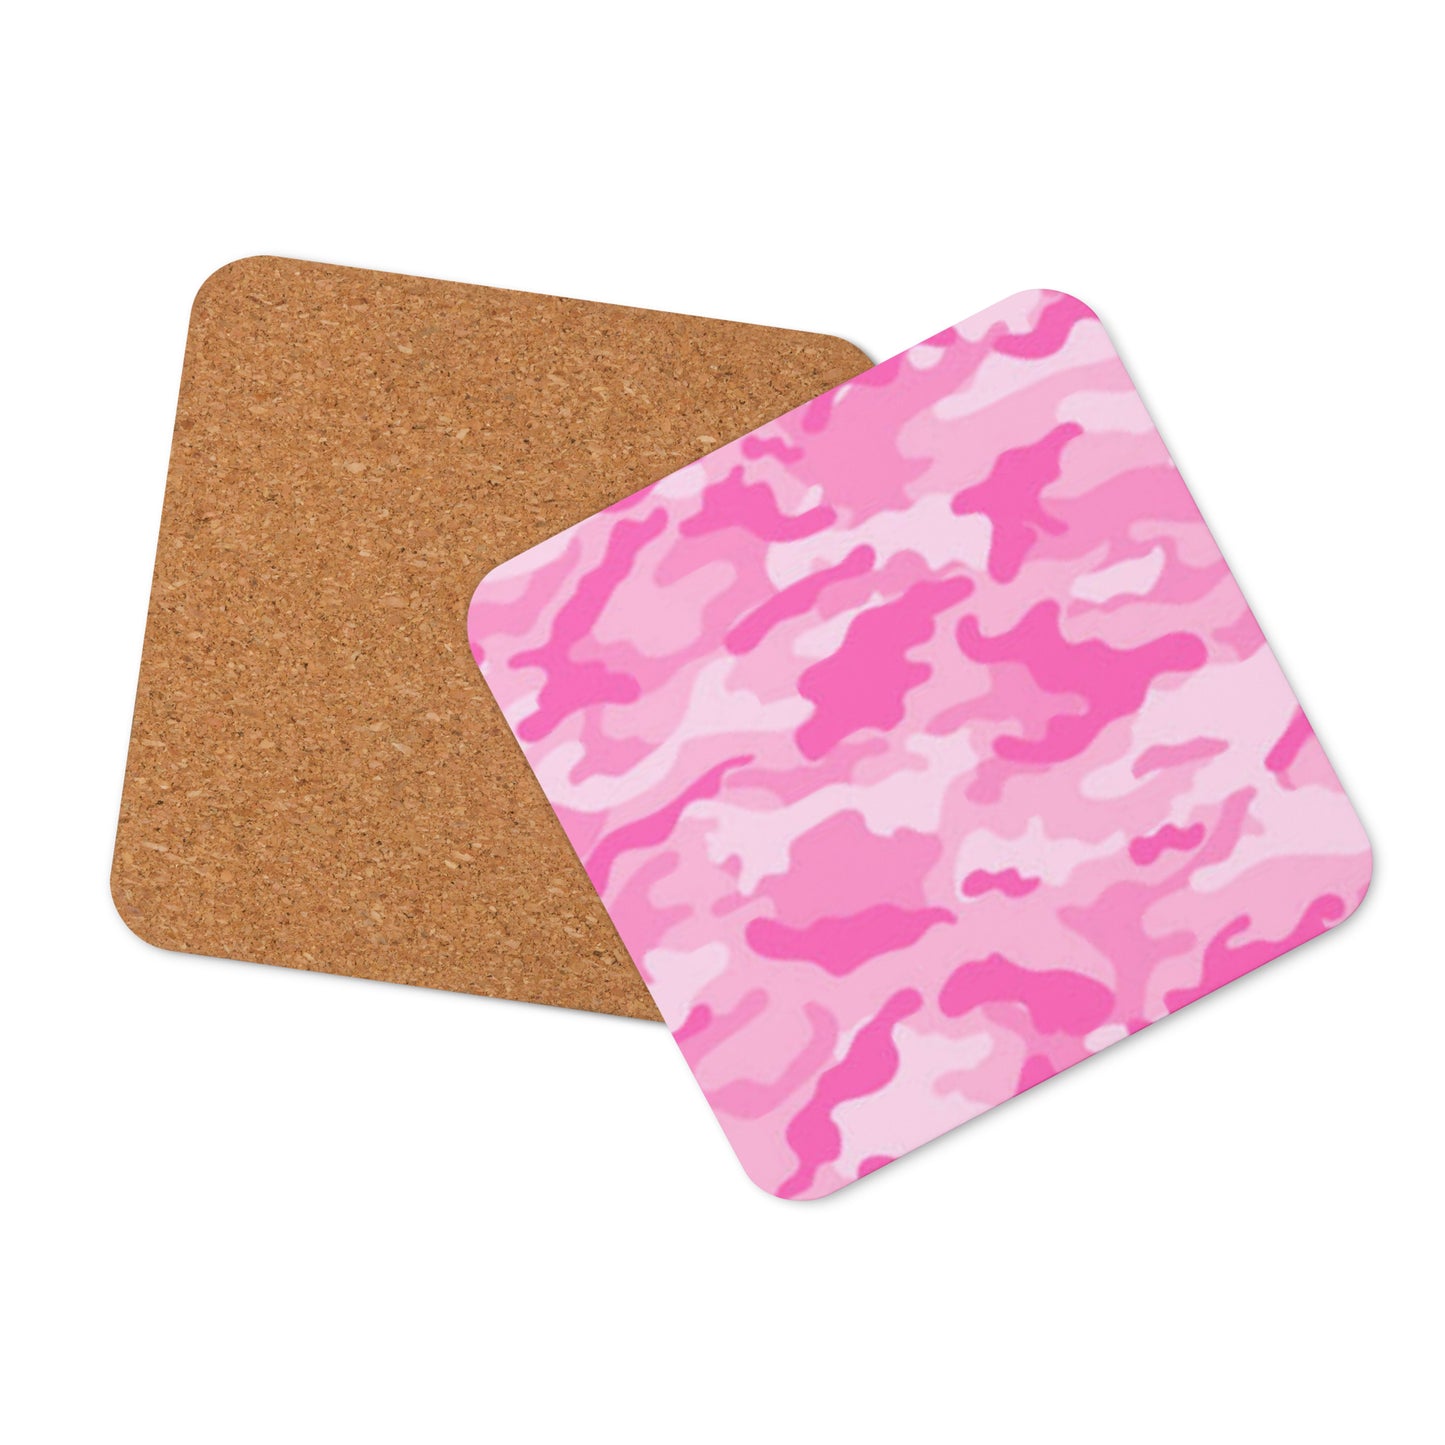 Cork-back coaster - Pink & Light Pink Camouflage